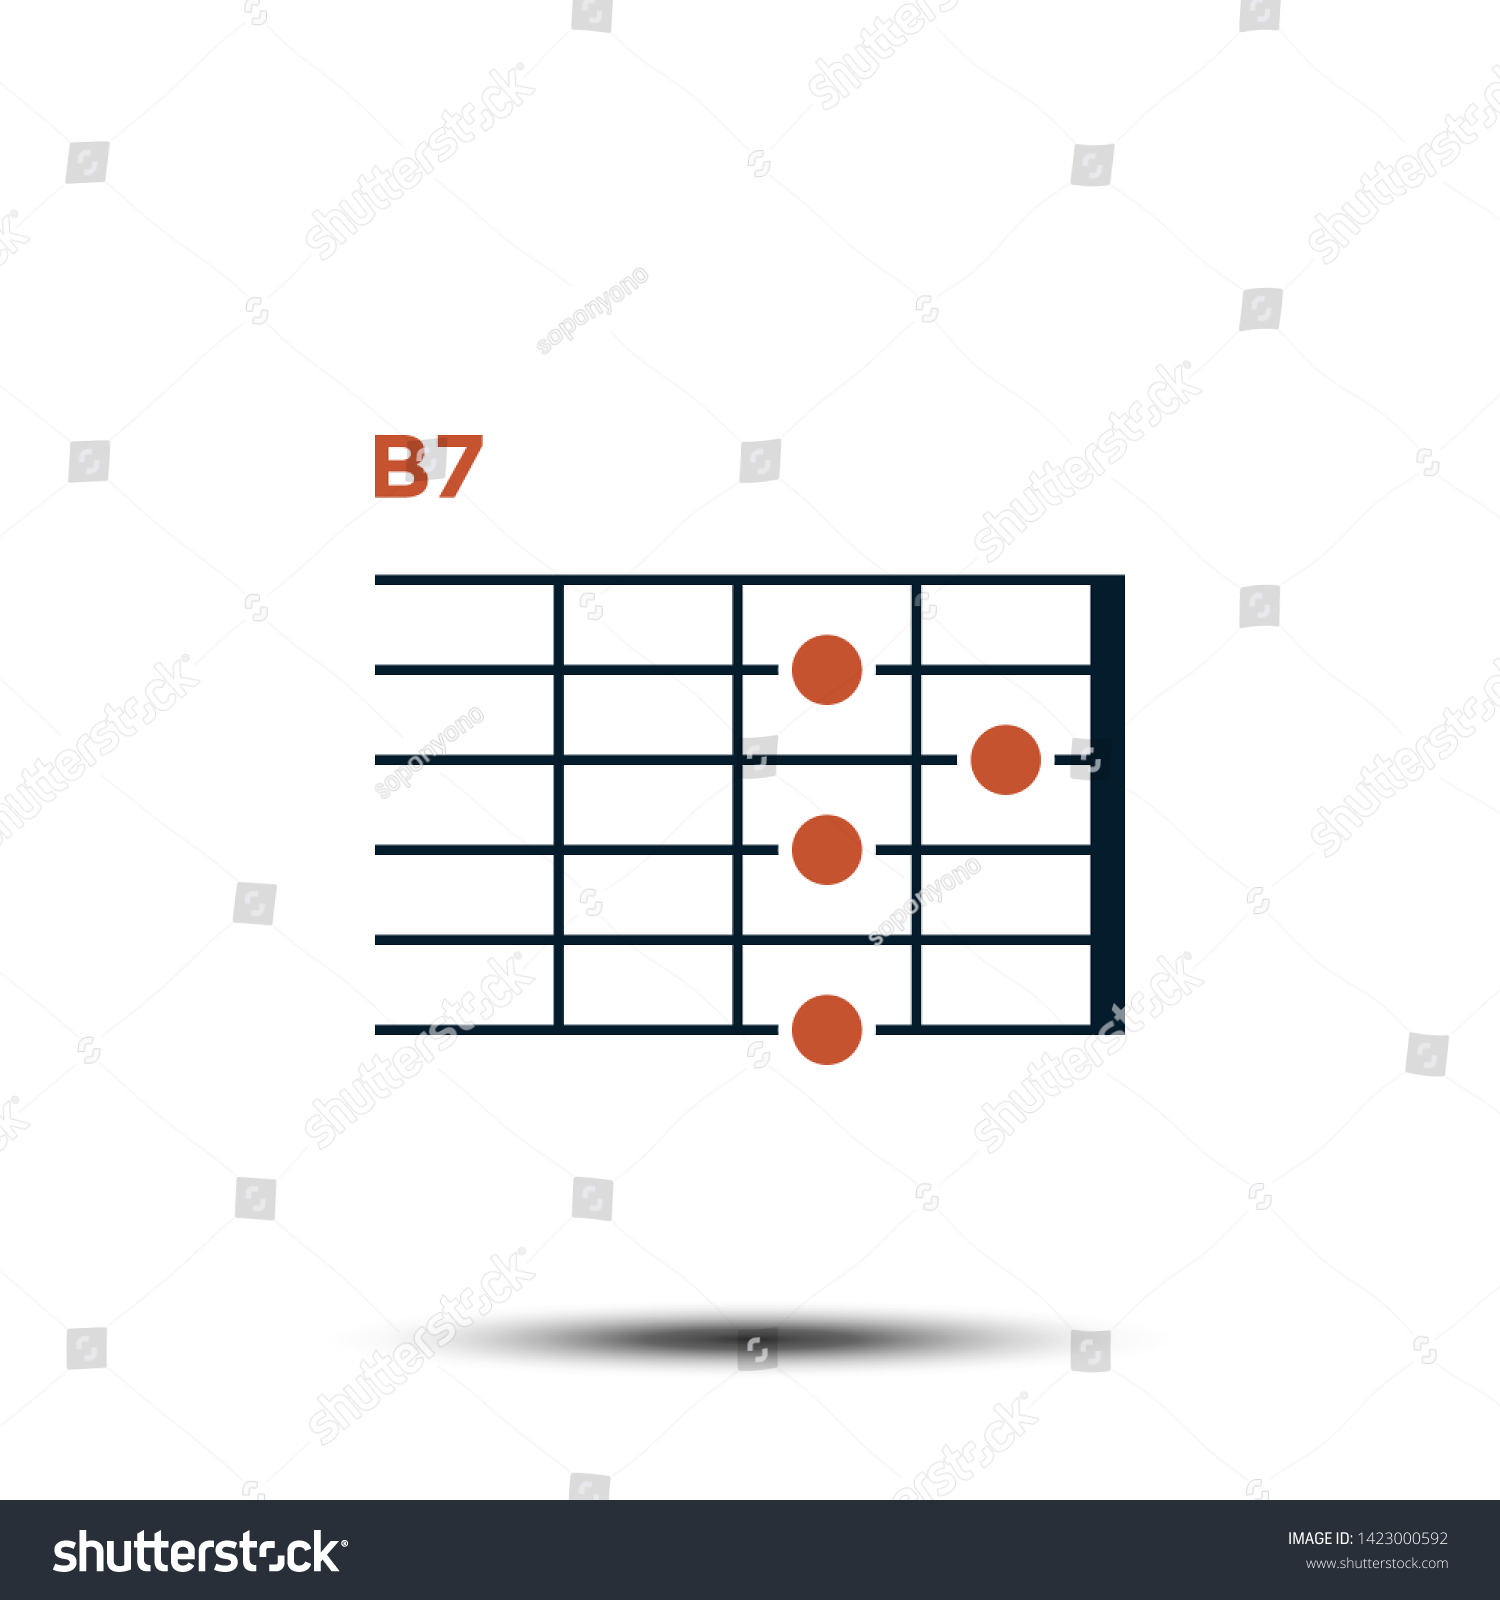 B7 Chord Chart